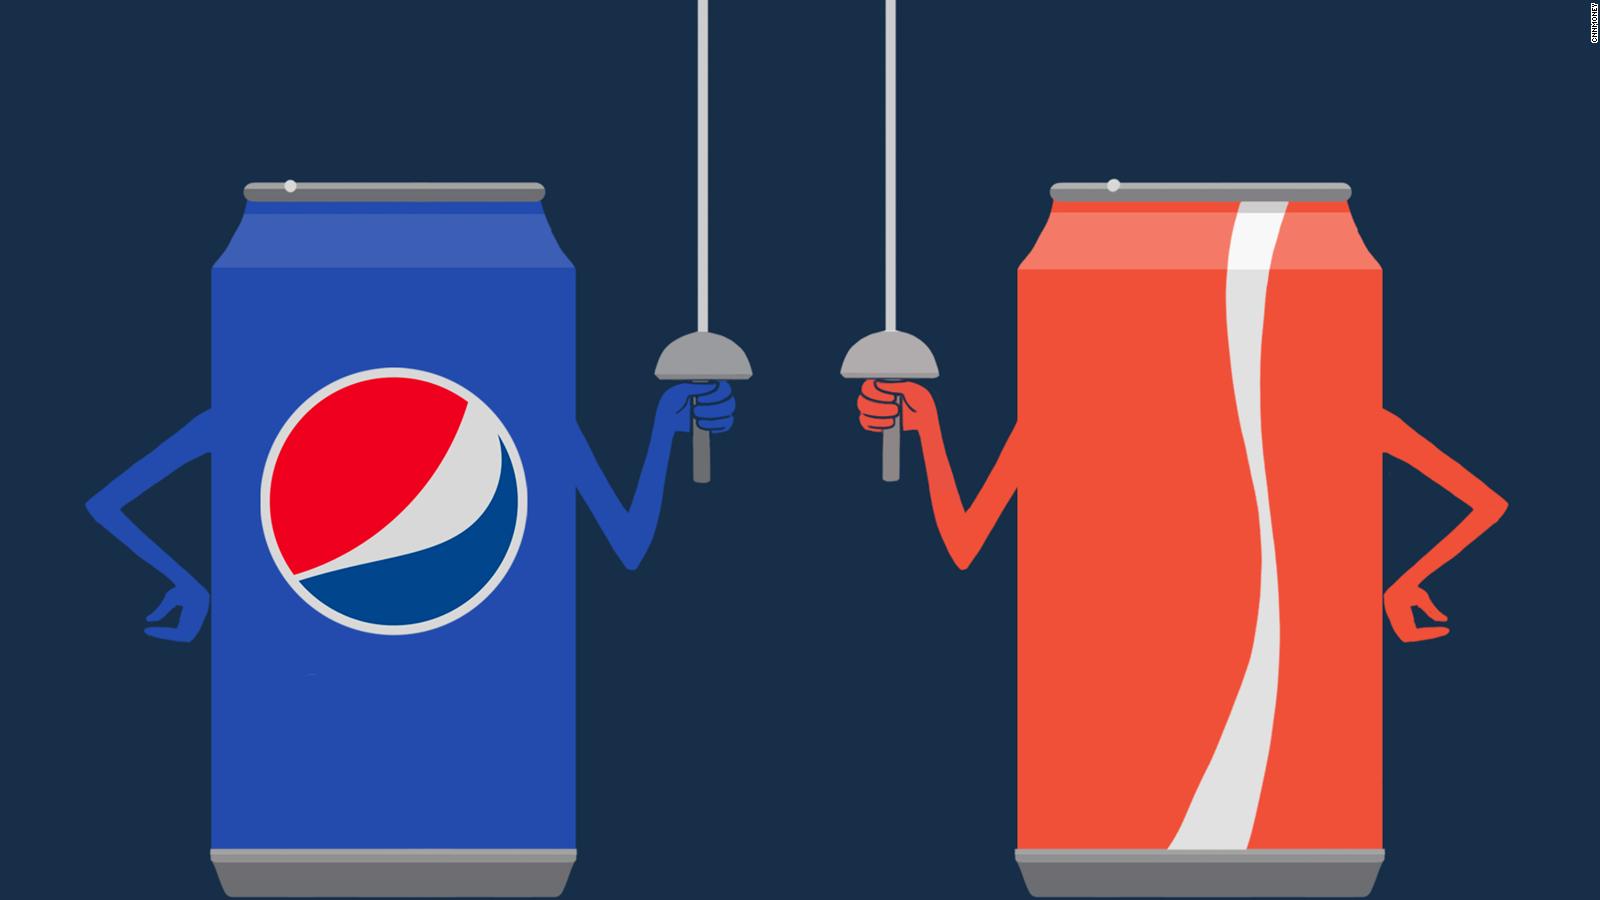 Coke Vs Pepsi The Cola Wars Are Back Cnn Video